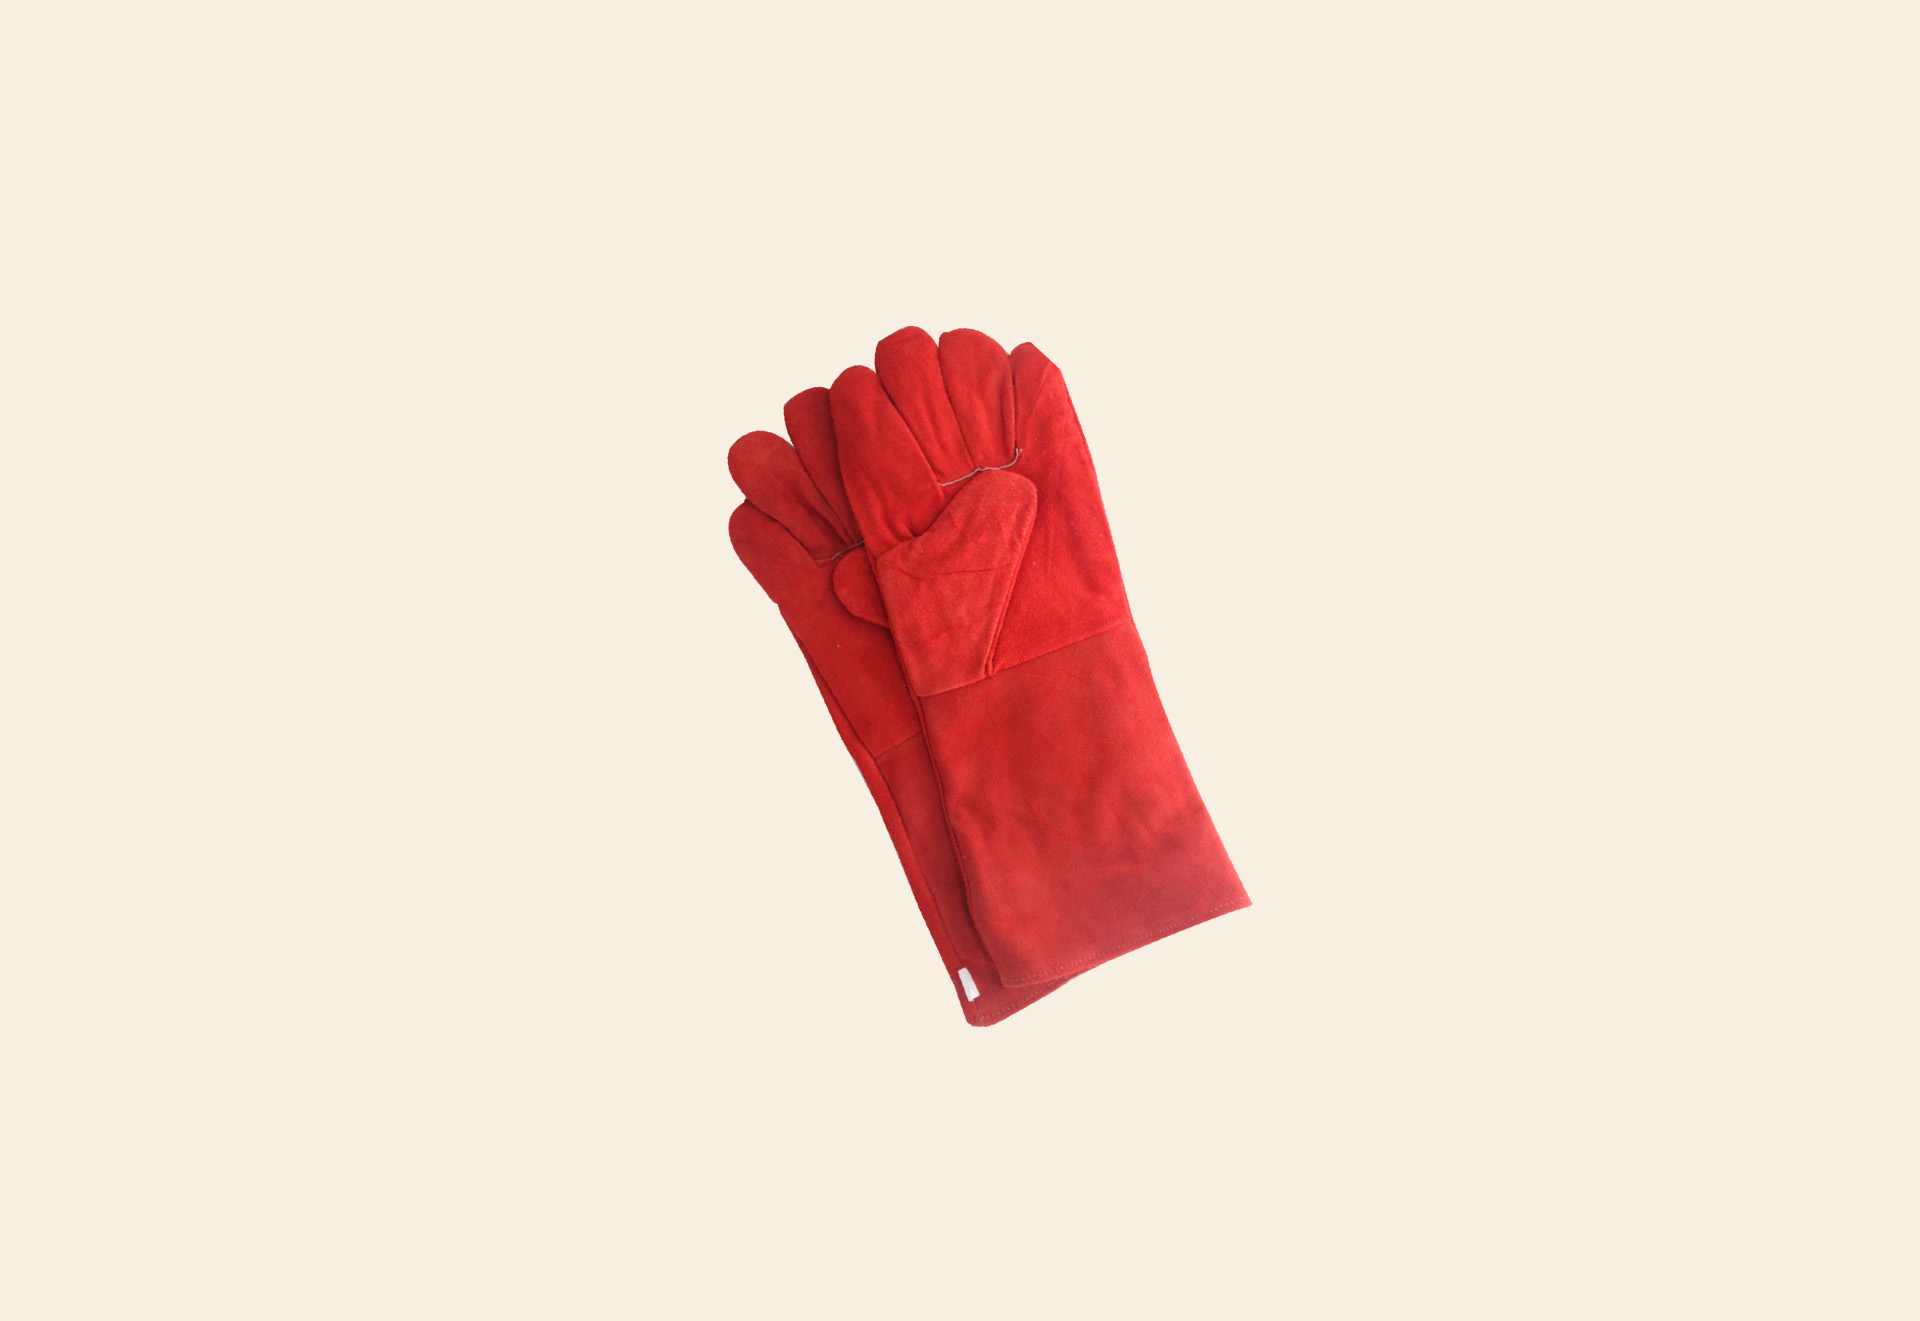 Pakistani welding gloves